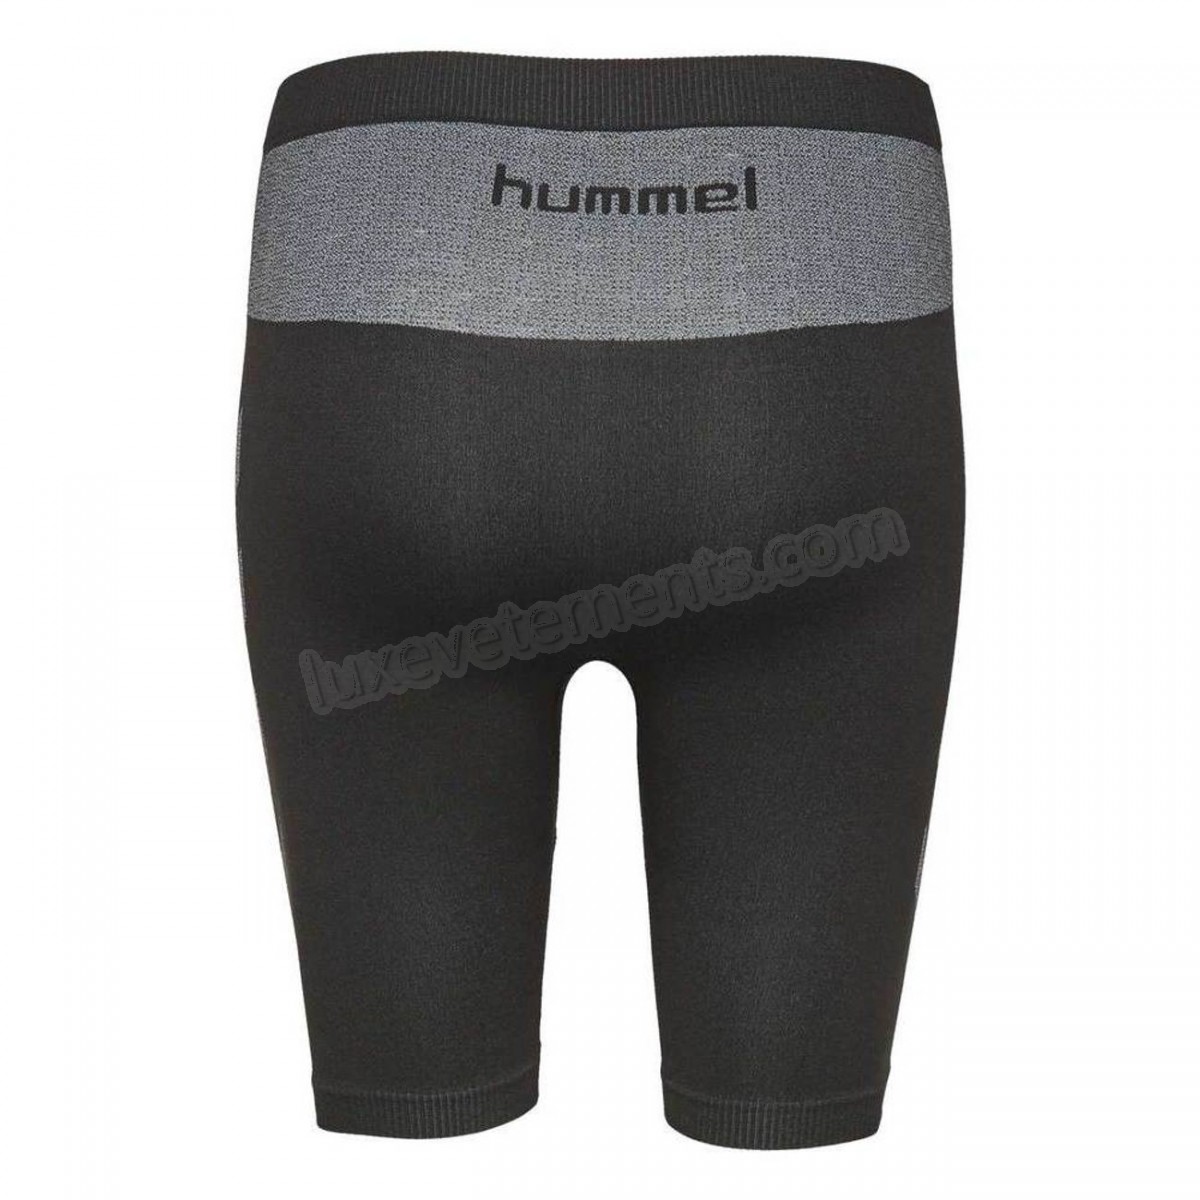 Hummel-Fitness femme HUMMEL Short femme Hummel First Comfort Vente en ligne - -2